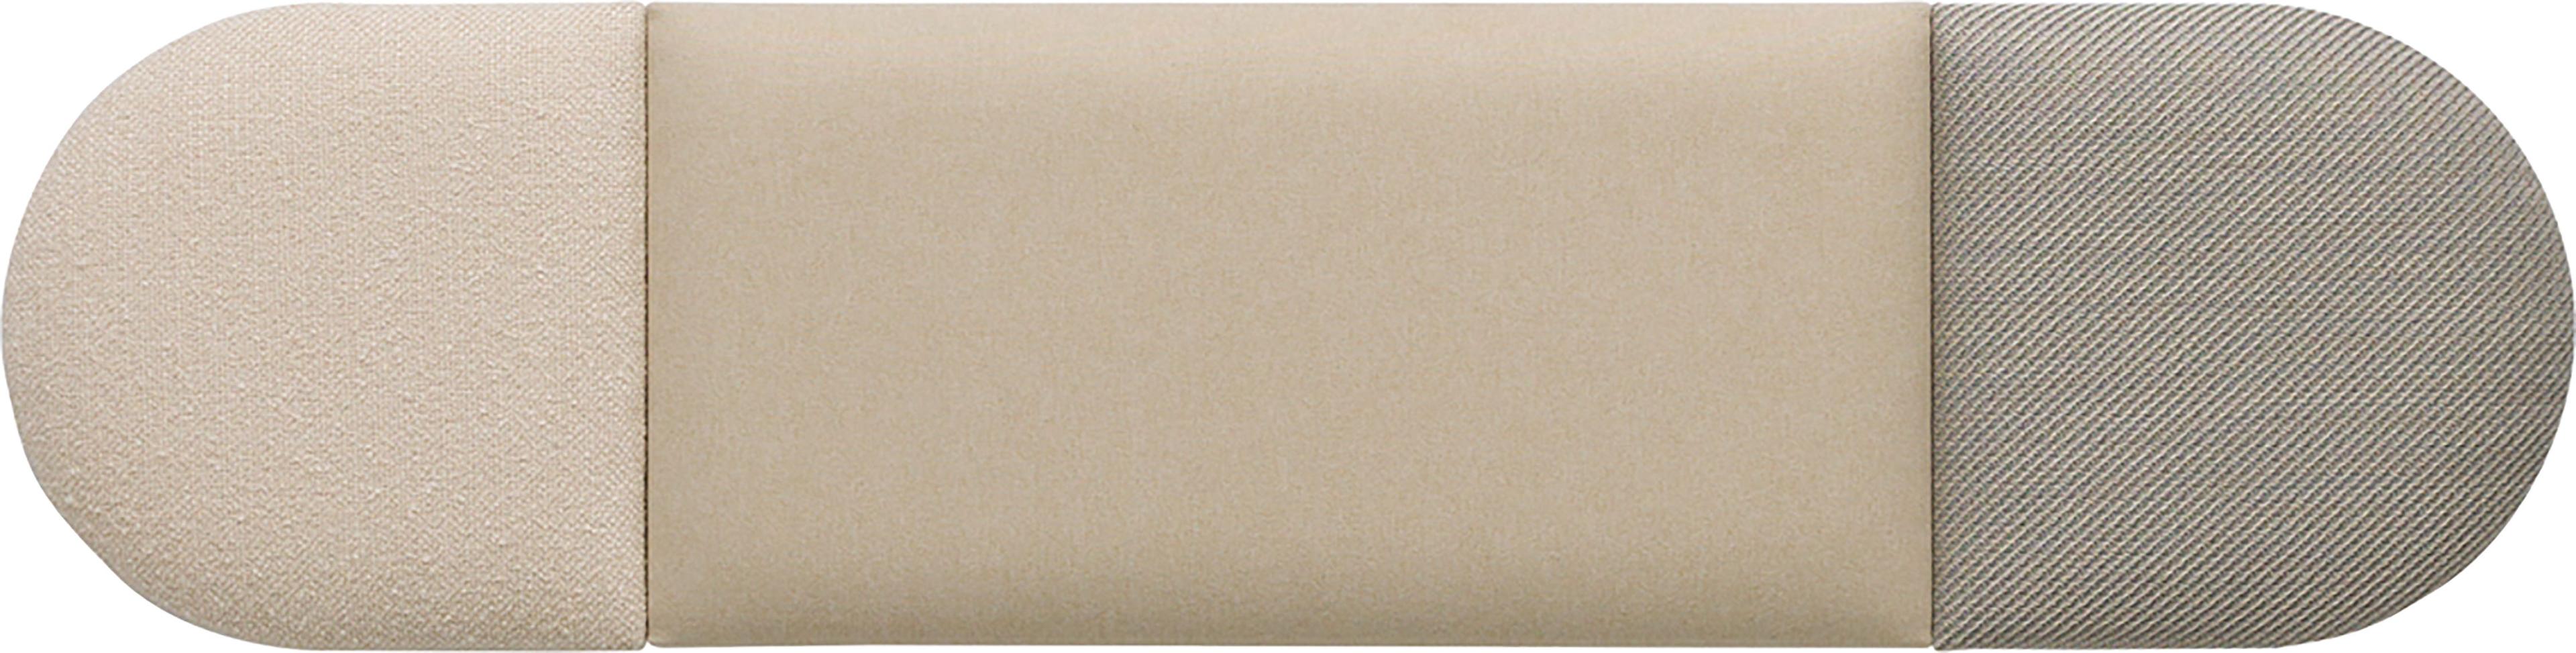 Conjunto de paneles tapizados regulares Soform pequeños en tonos beige